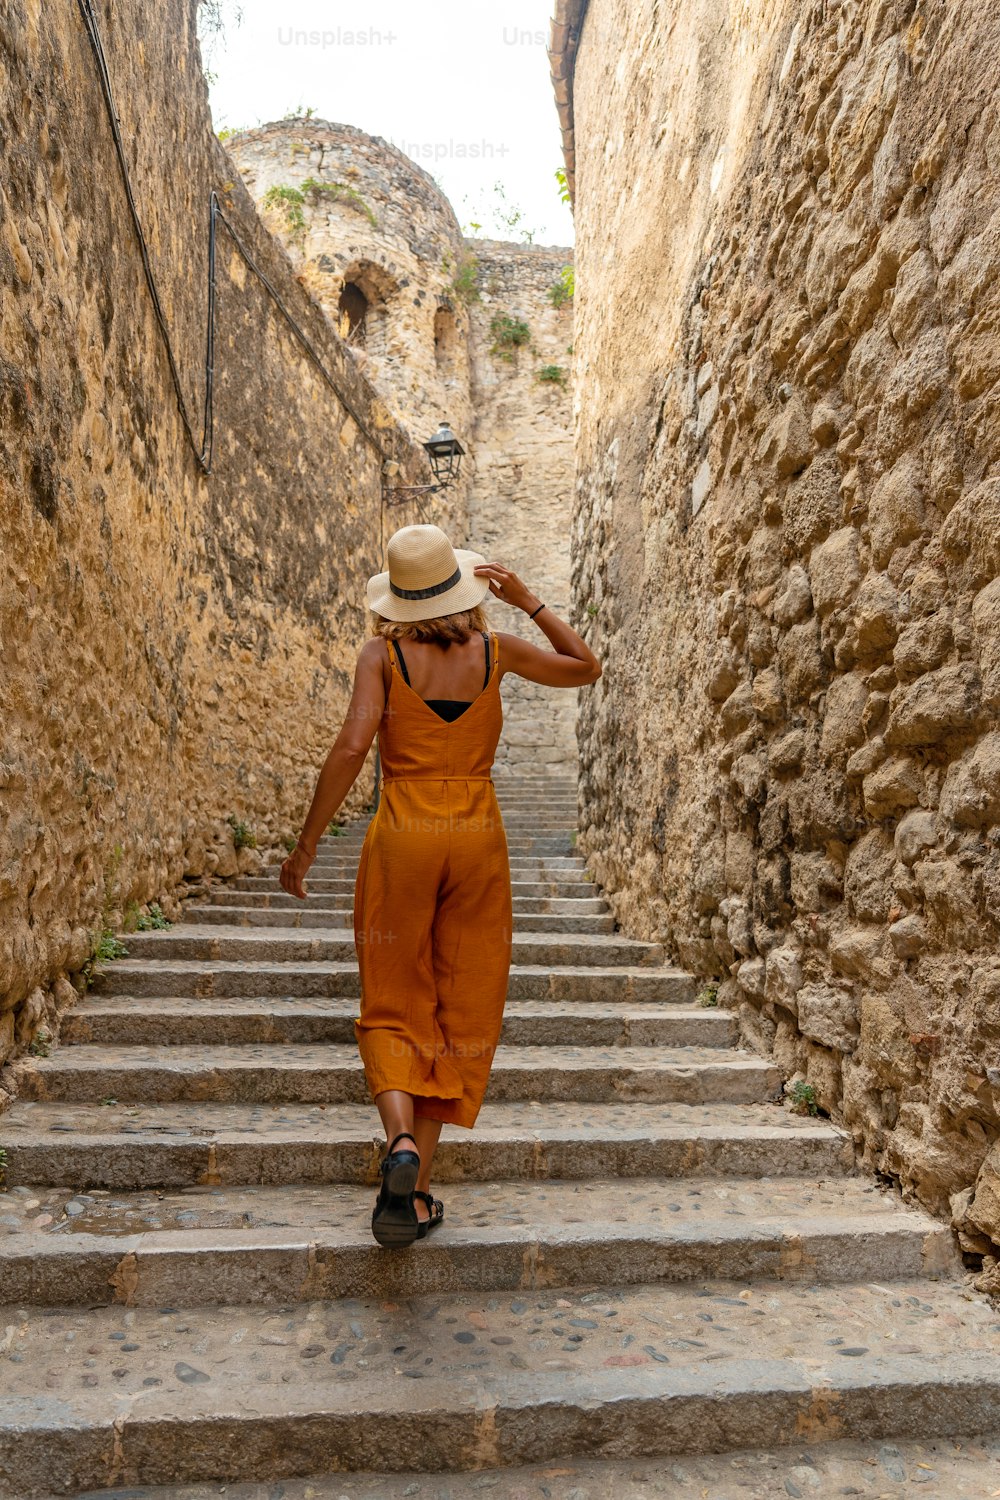 Girona cidade medieval, um jovem turista com um chapéu nas escadas das ruas do centro histórico, Costa Brava da Catalunha no Mediterrâneo. Espanha